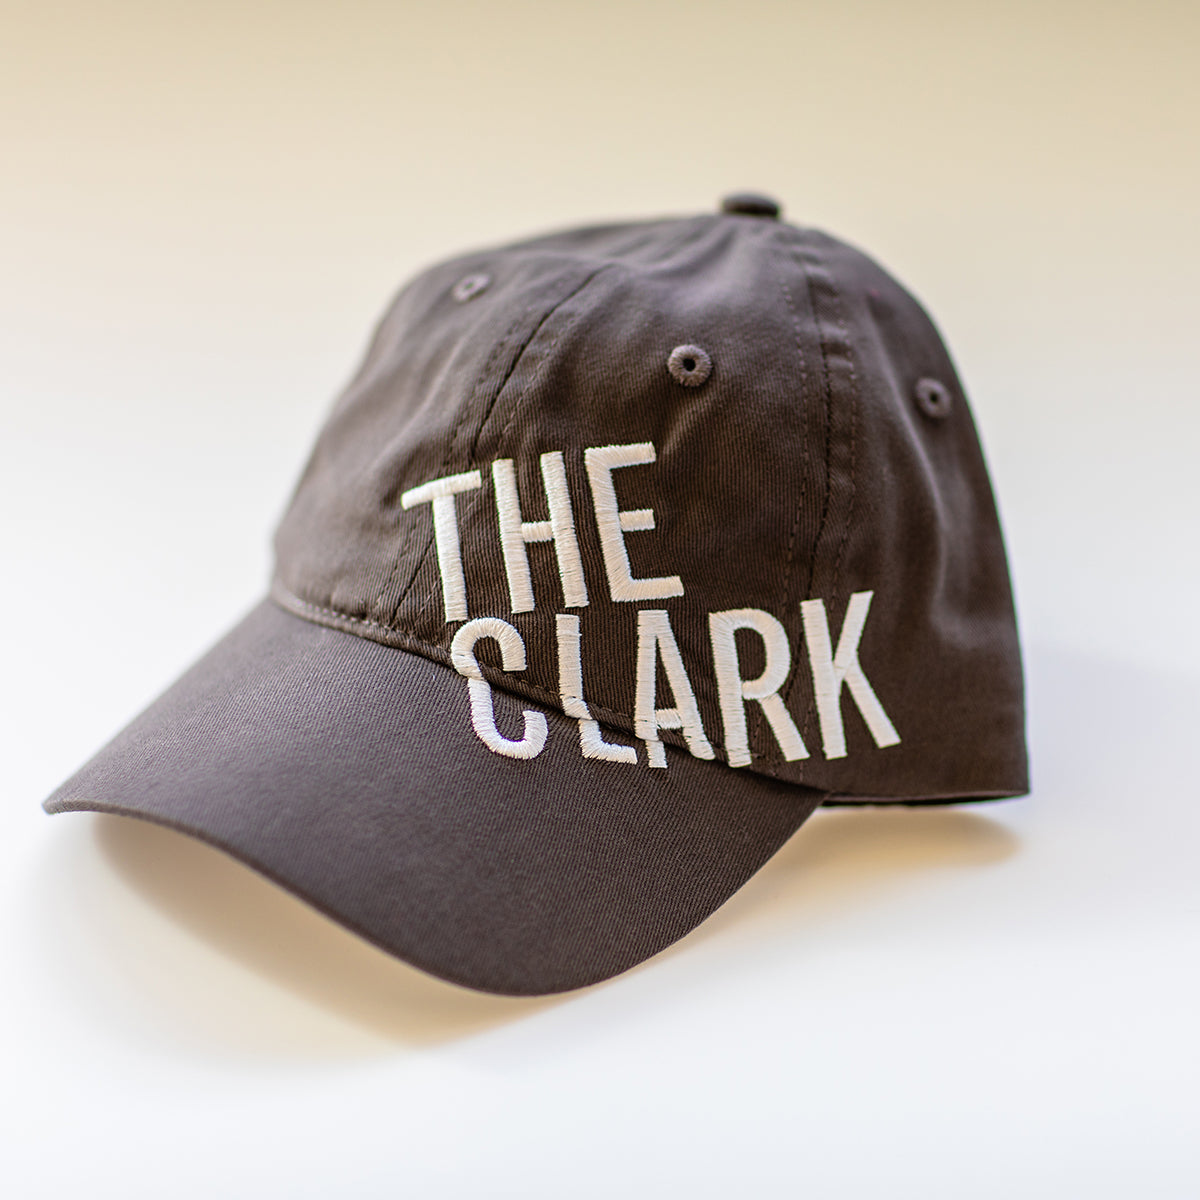 Clark Baseball Cap